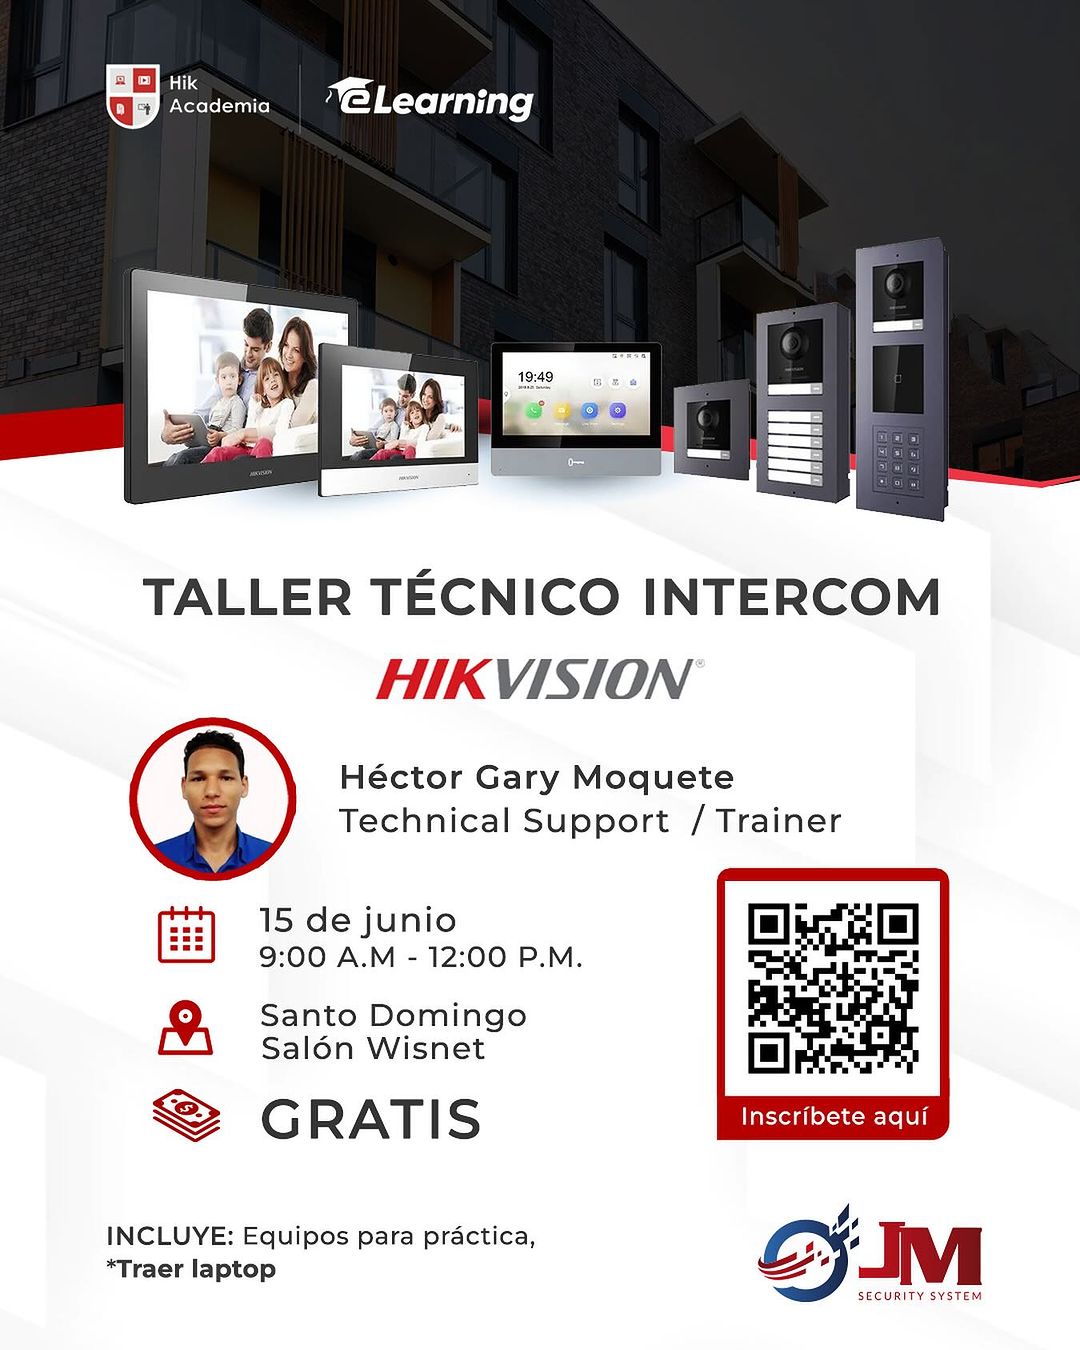 Aprende sobre las nuevas tecnologías de Intercom con Hikvision. 😎  📌 Inscrí...